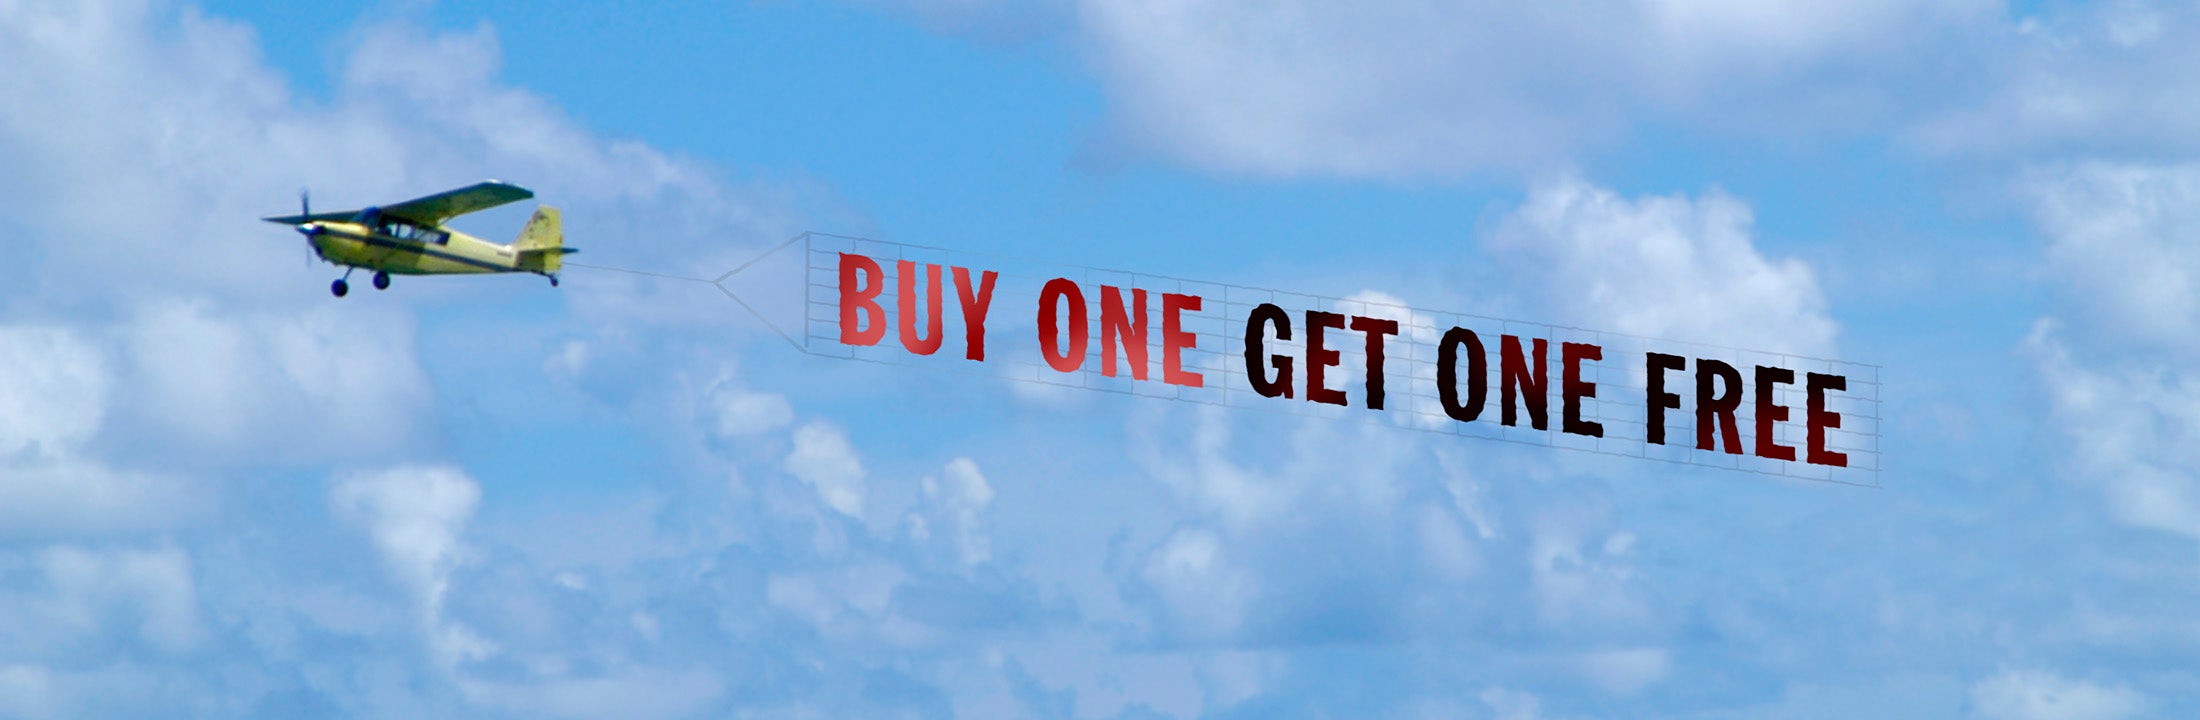 Vliegtuig met reclametekst 'buy one get one free'